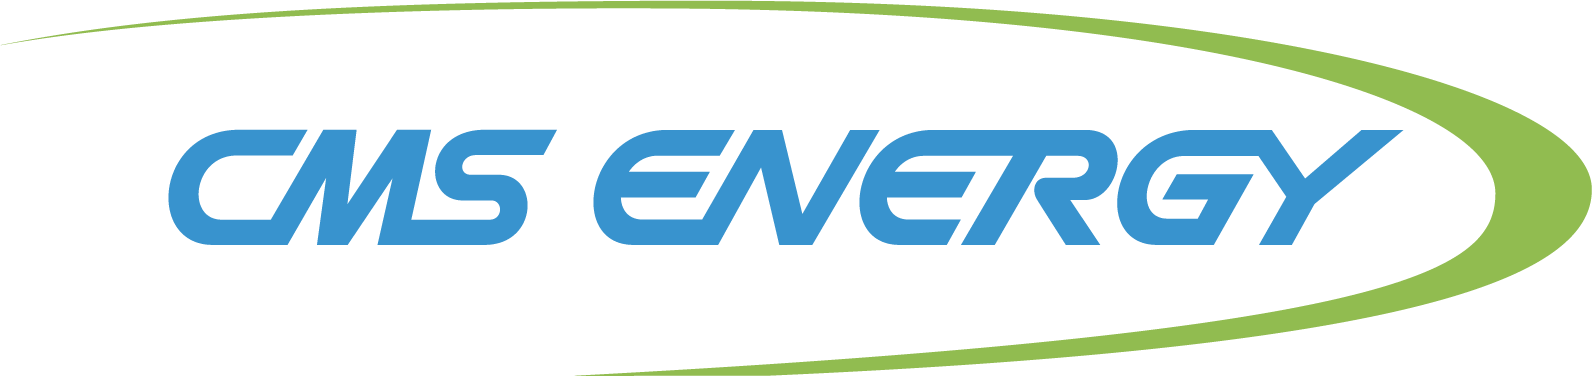 cms-energy-logo.png